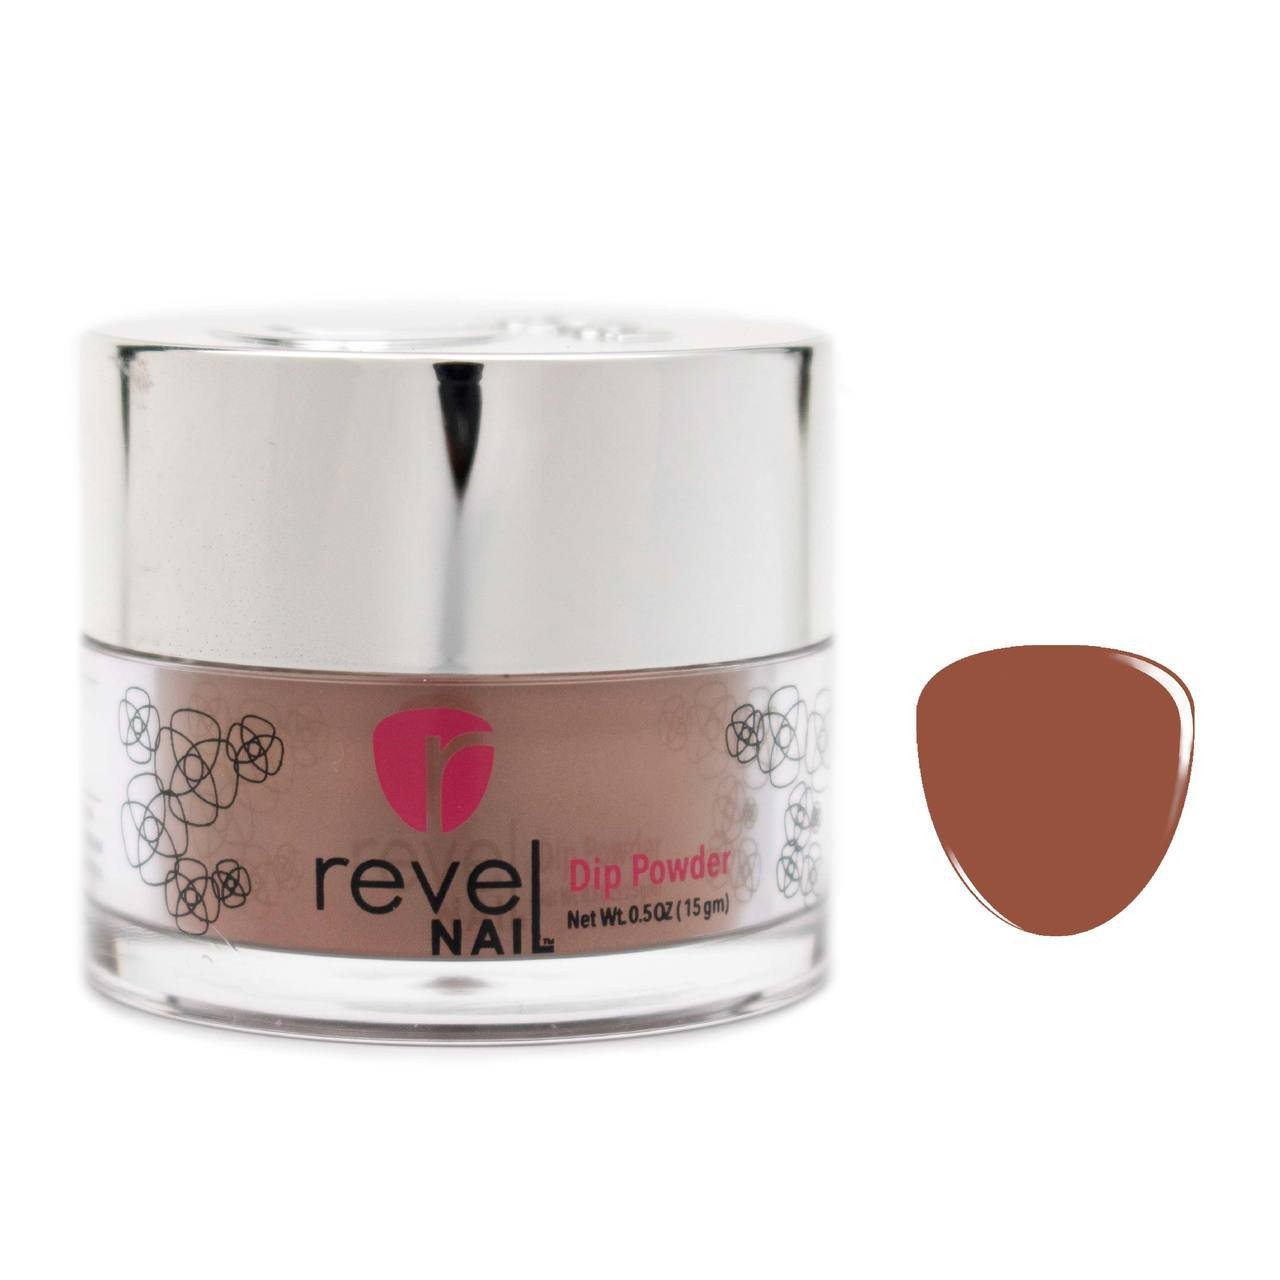 Revel Nail - Dip Powder - D236 Roast - 29g